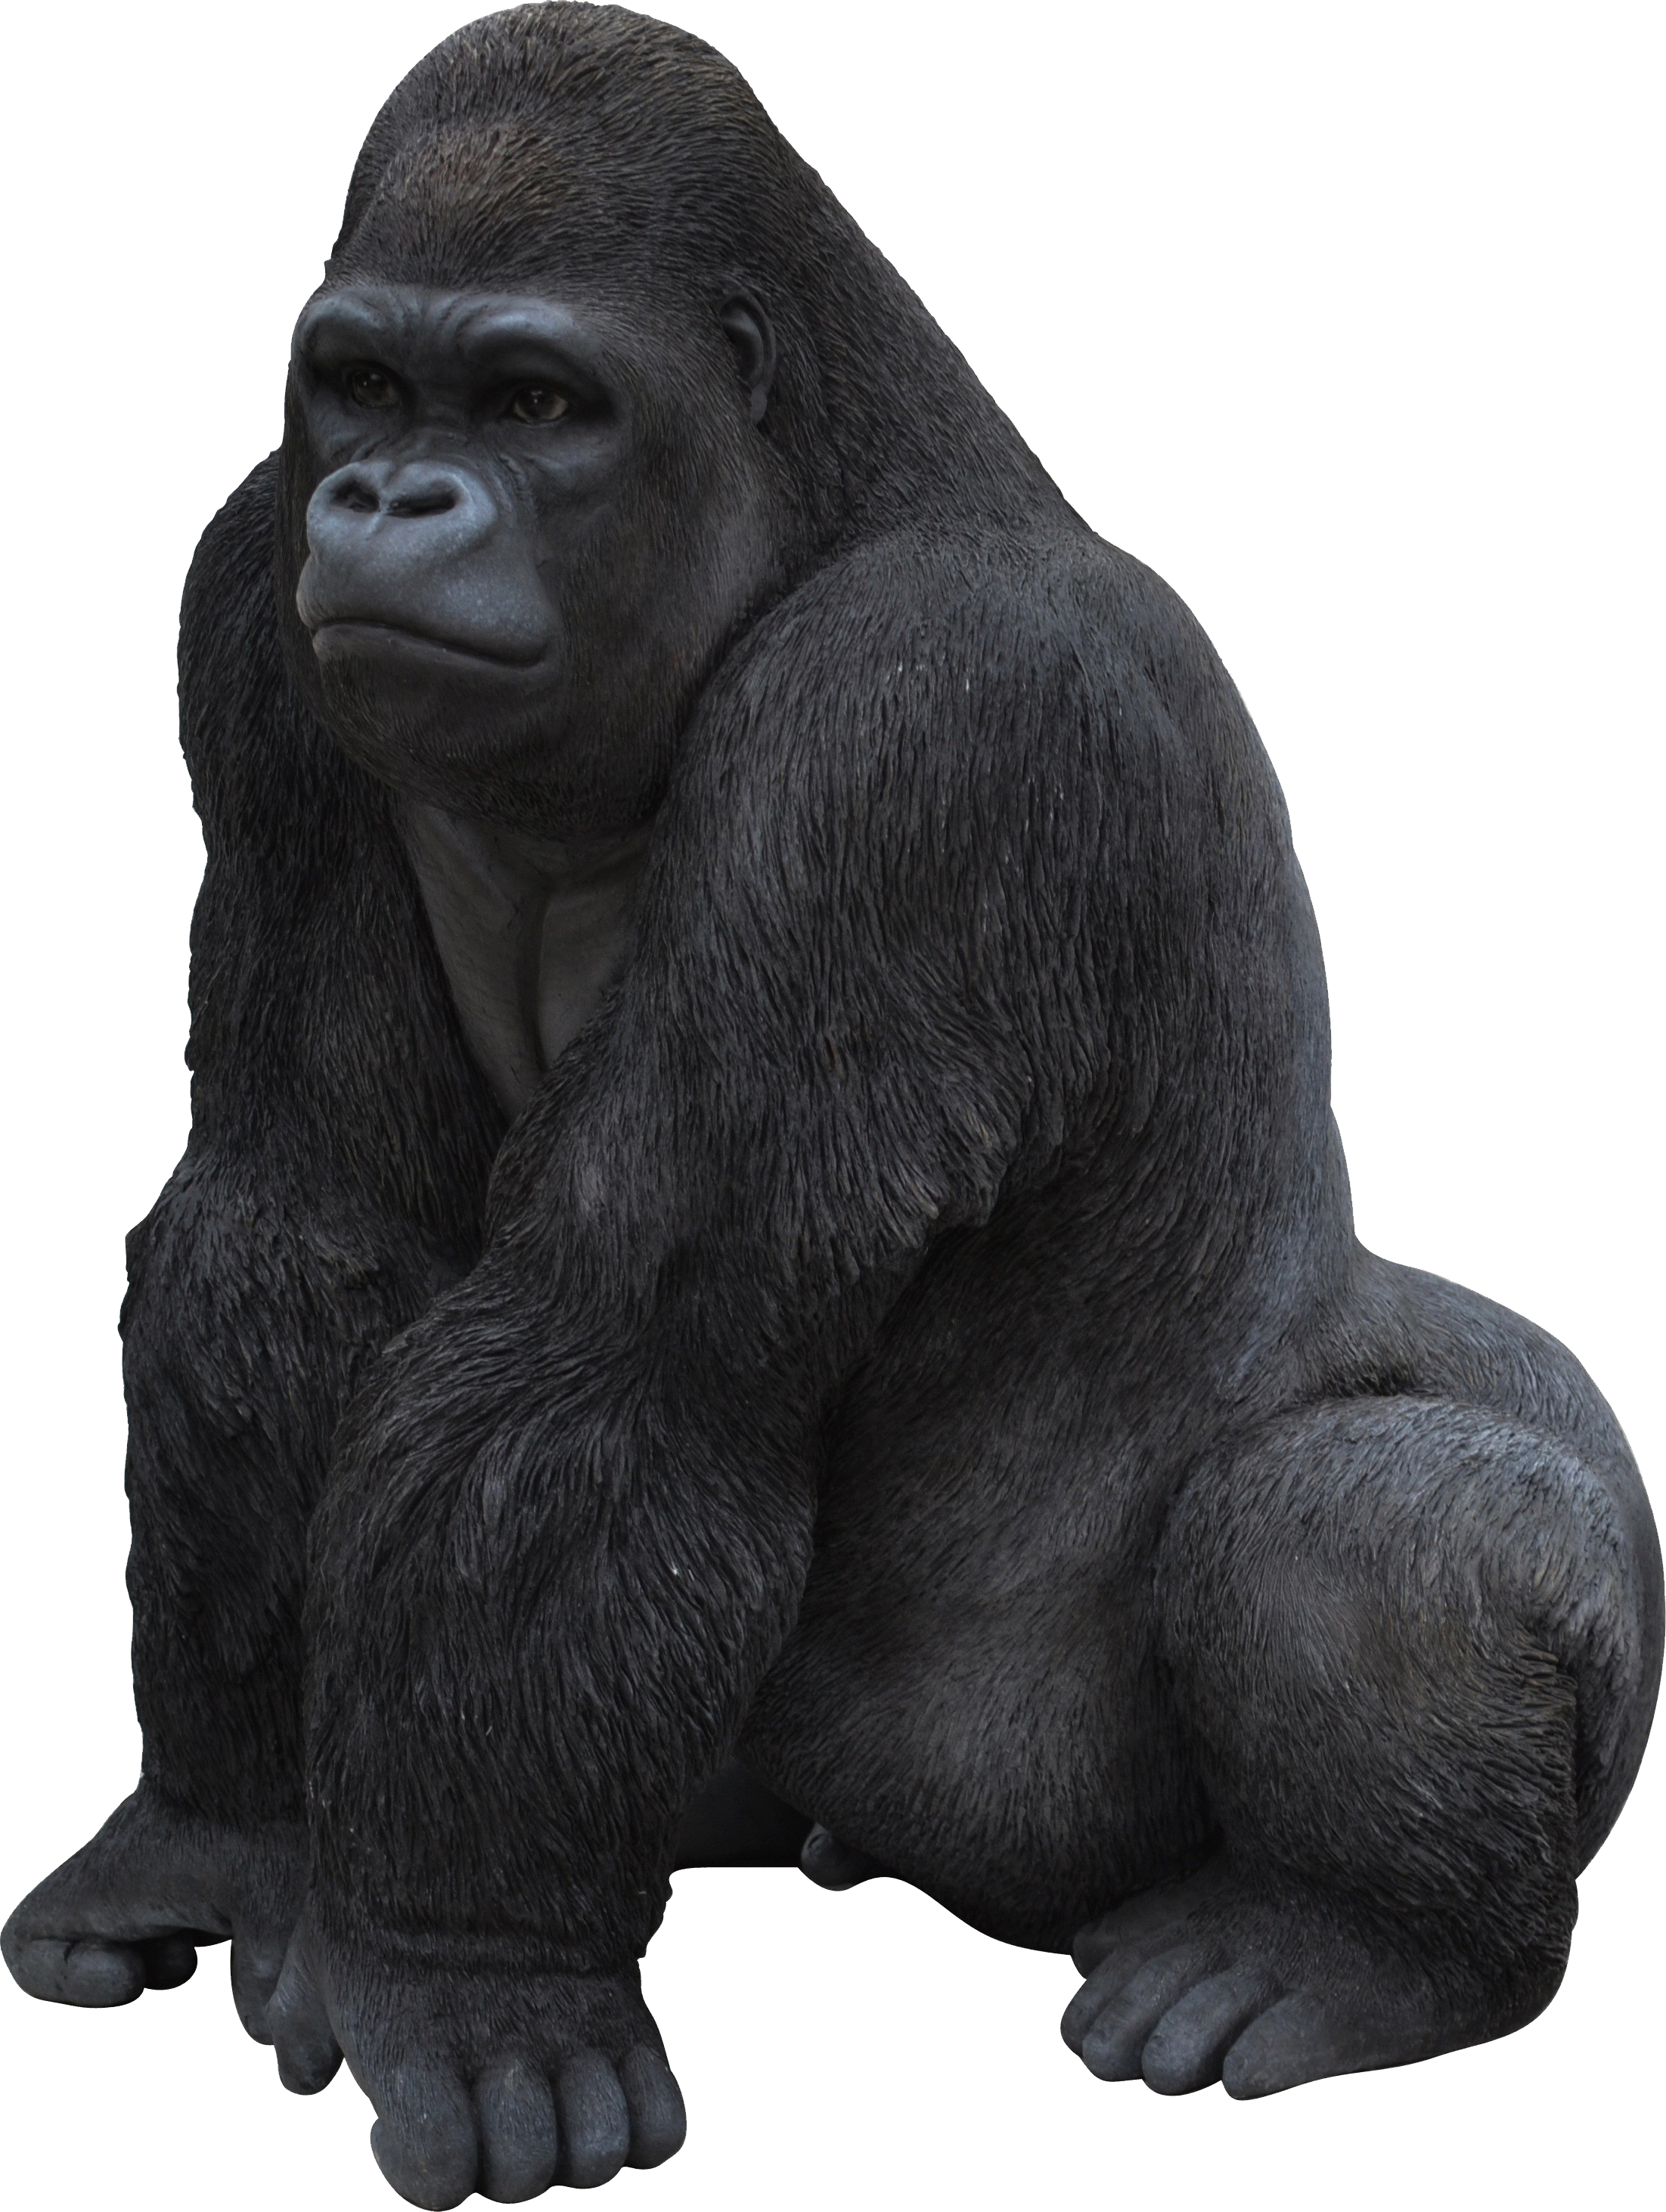 King Kong Gorilla Png image #